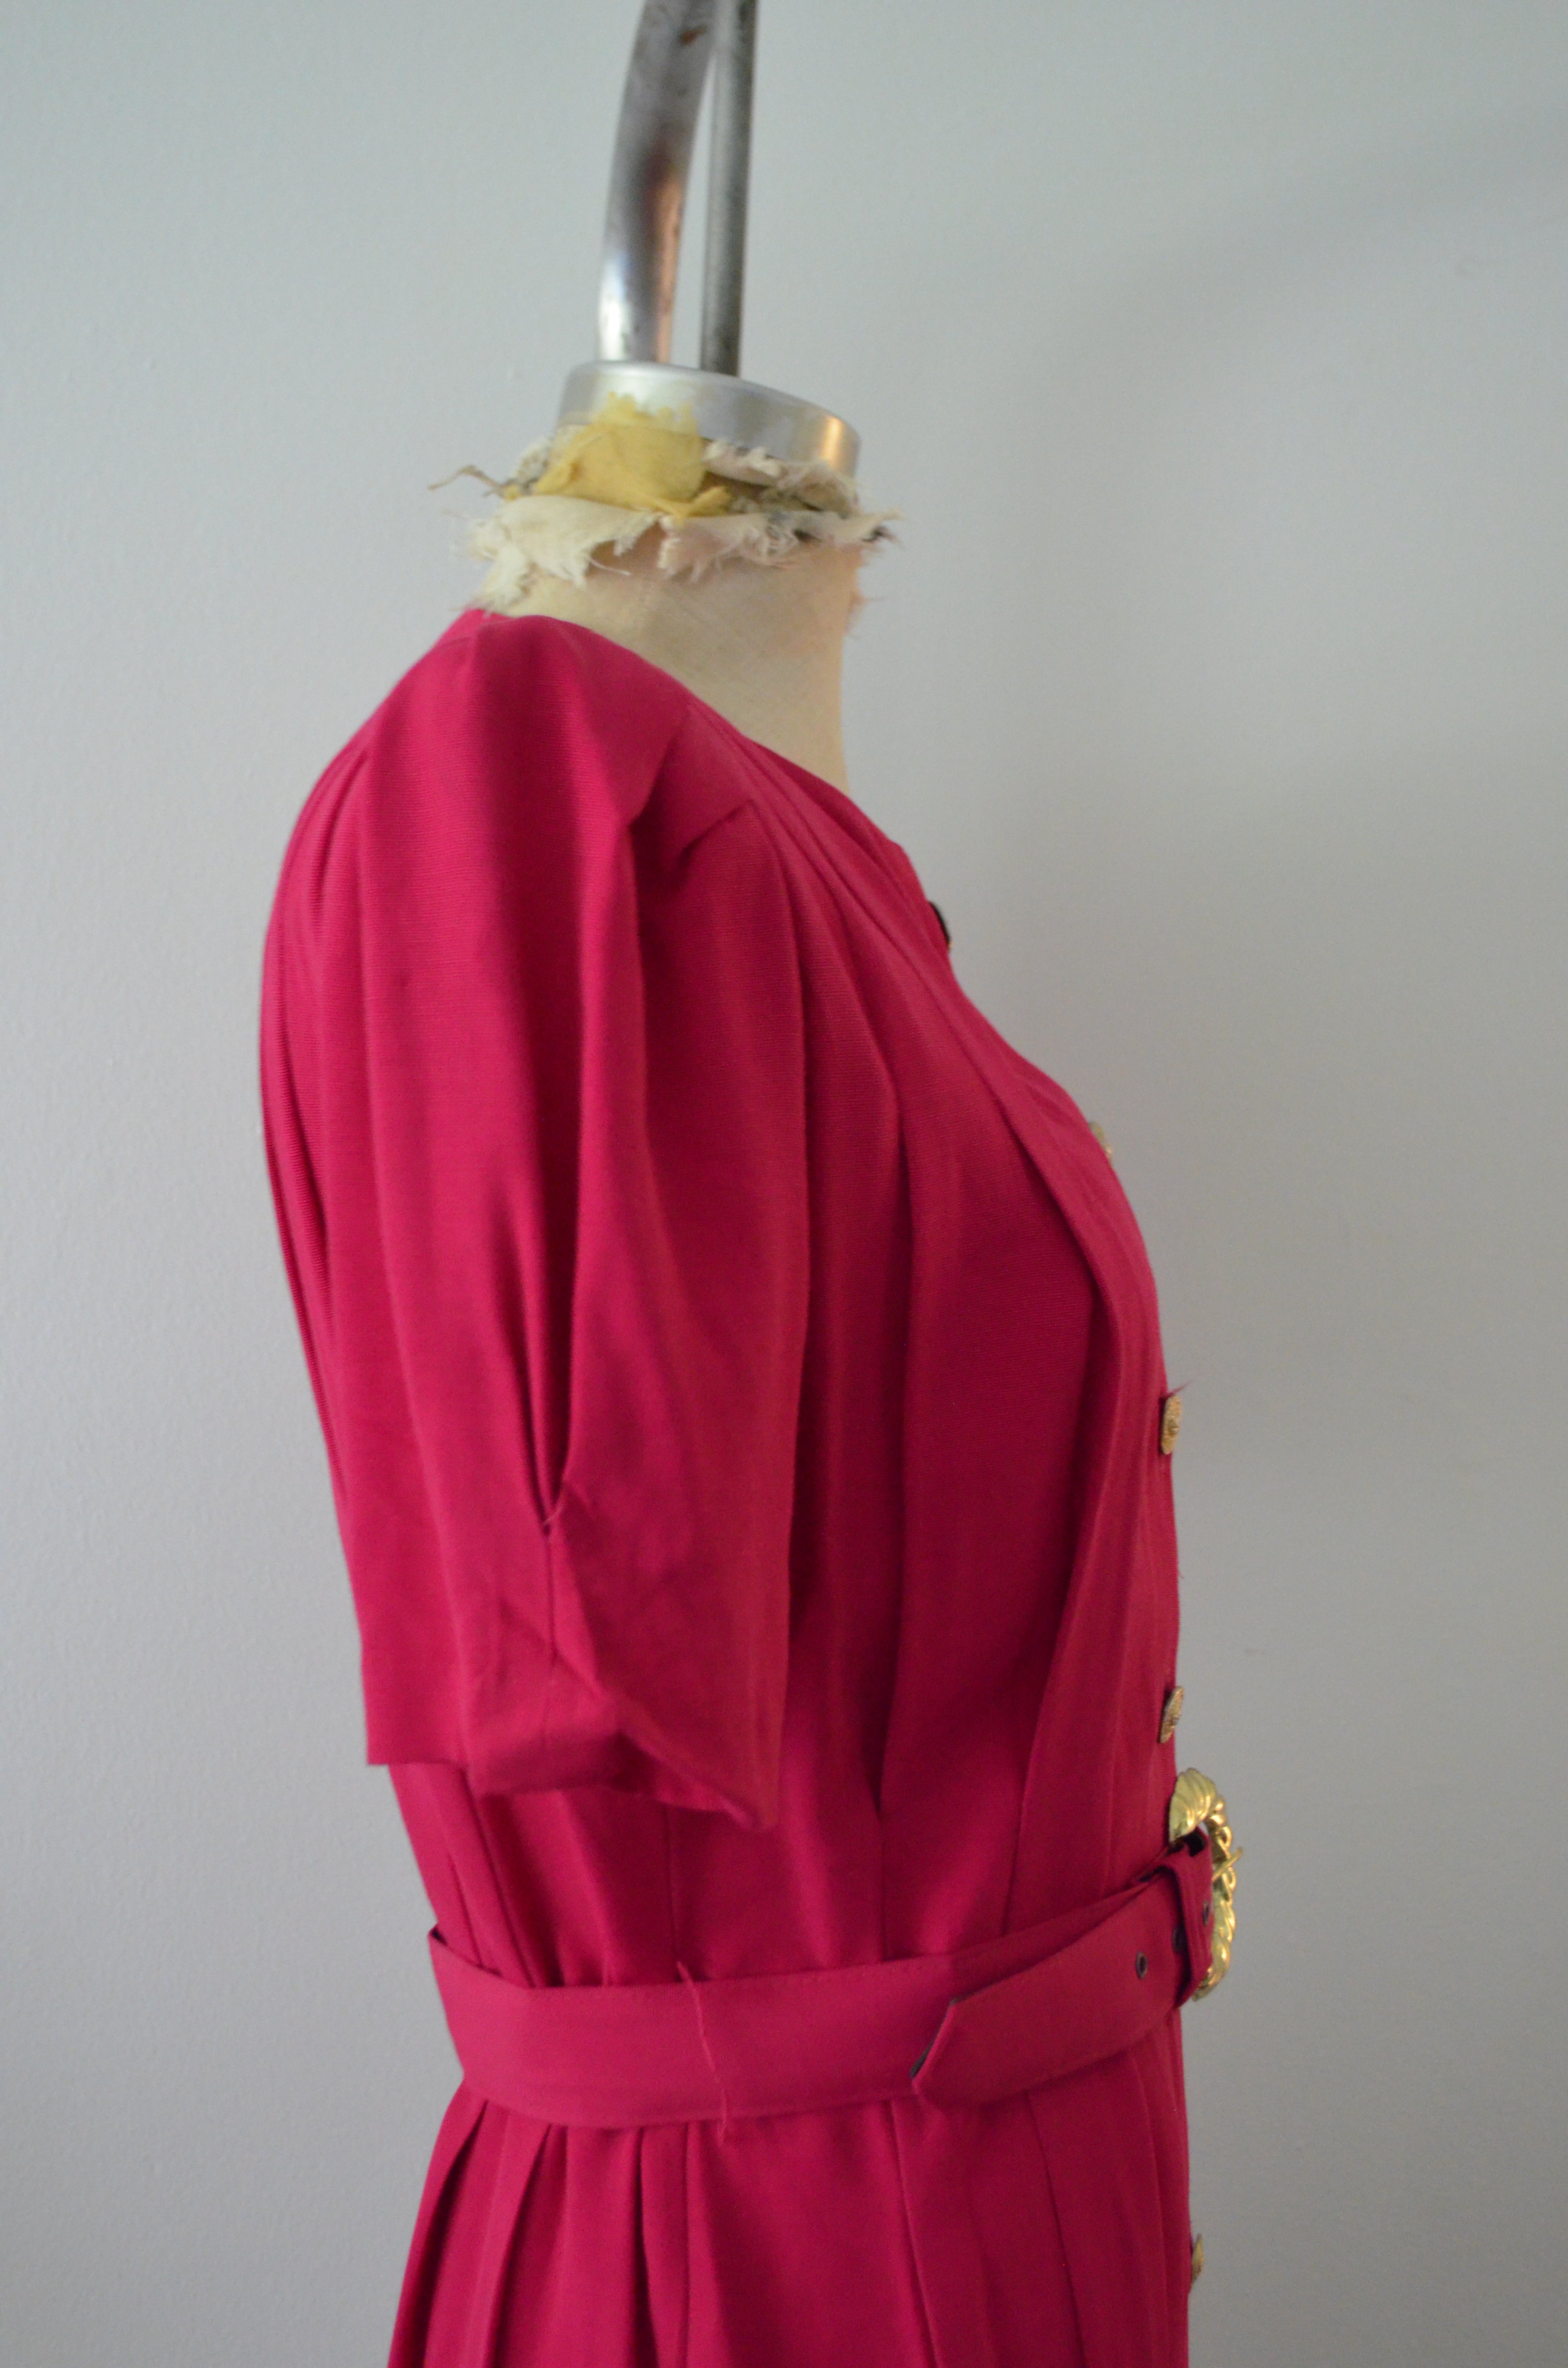 1980S Blazer Dress By S L Petites Pink Button Down Shirt Dress With Matching Belt Linen Shoulder Pads